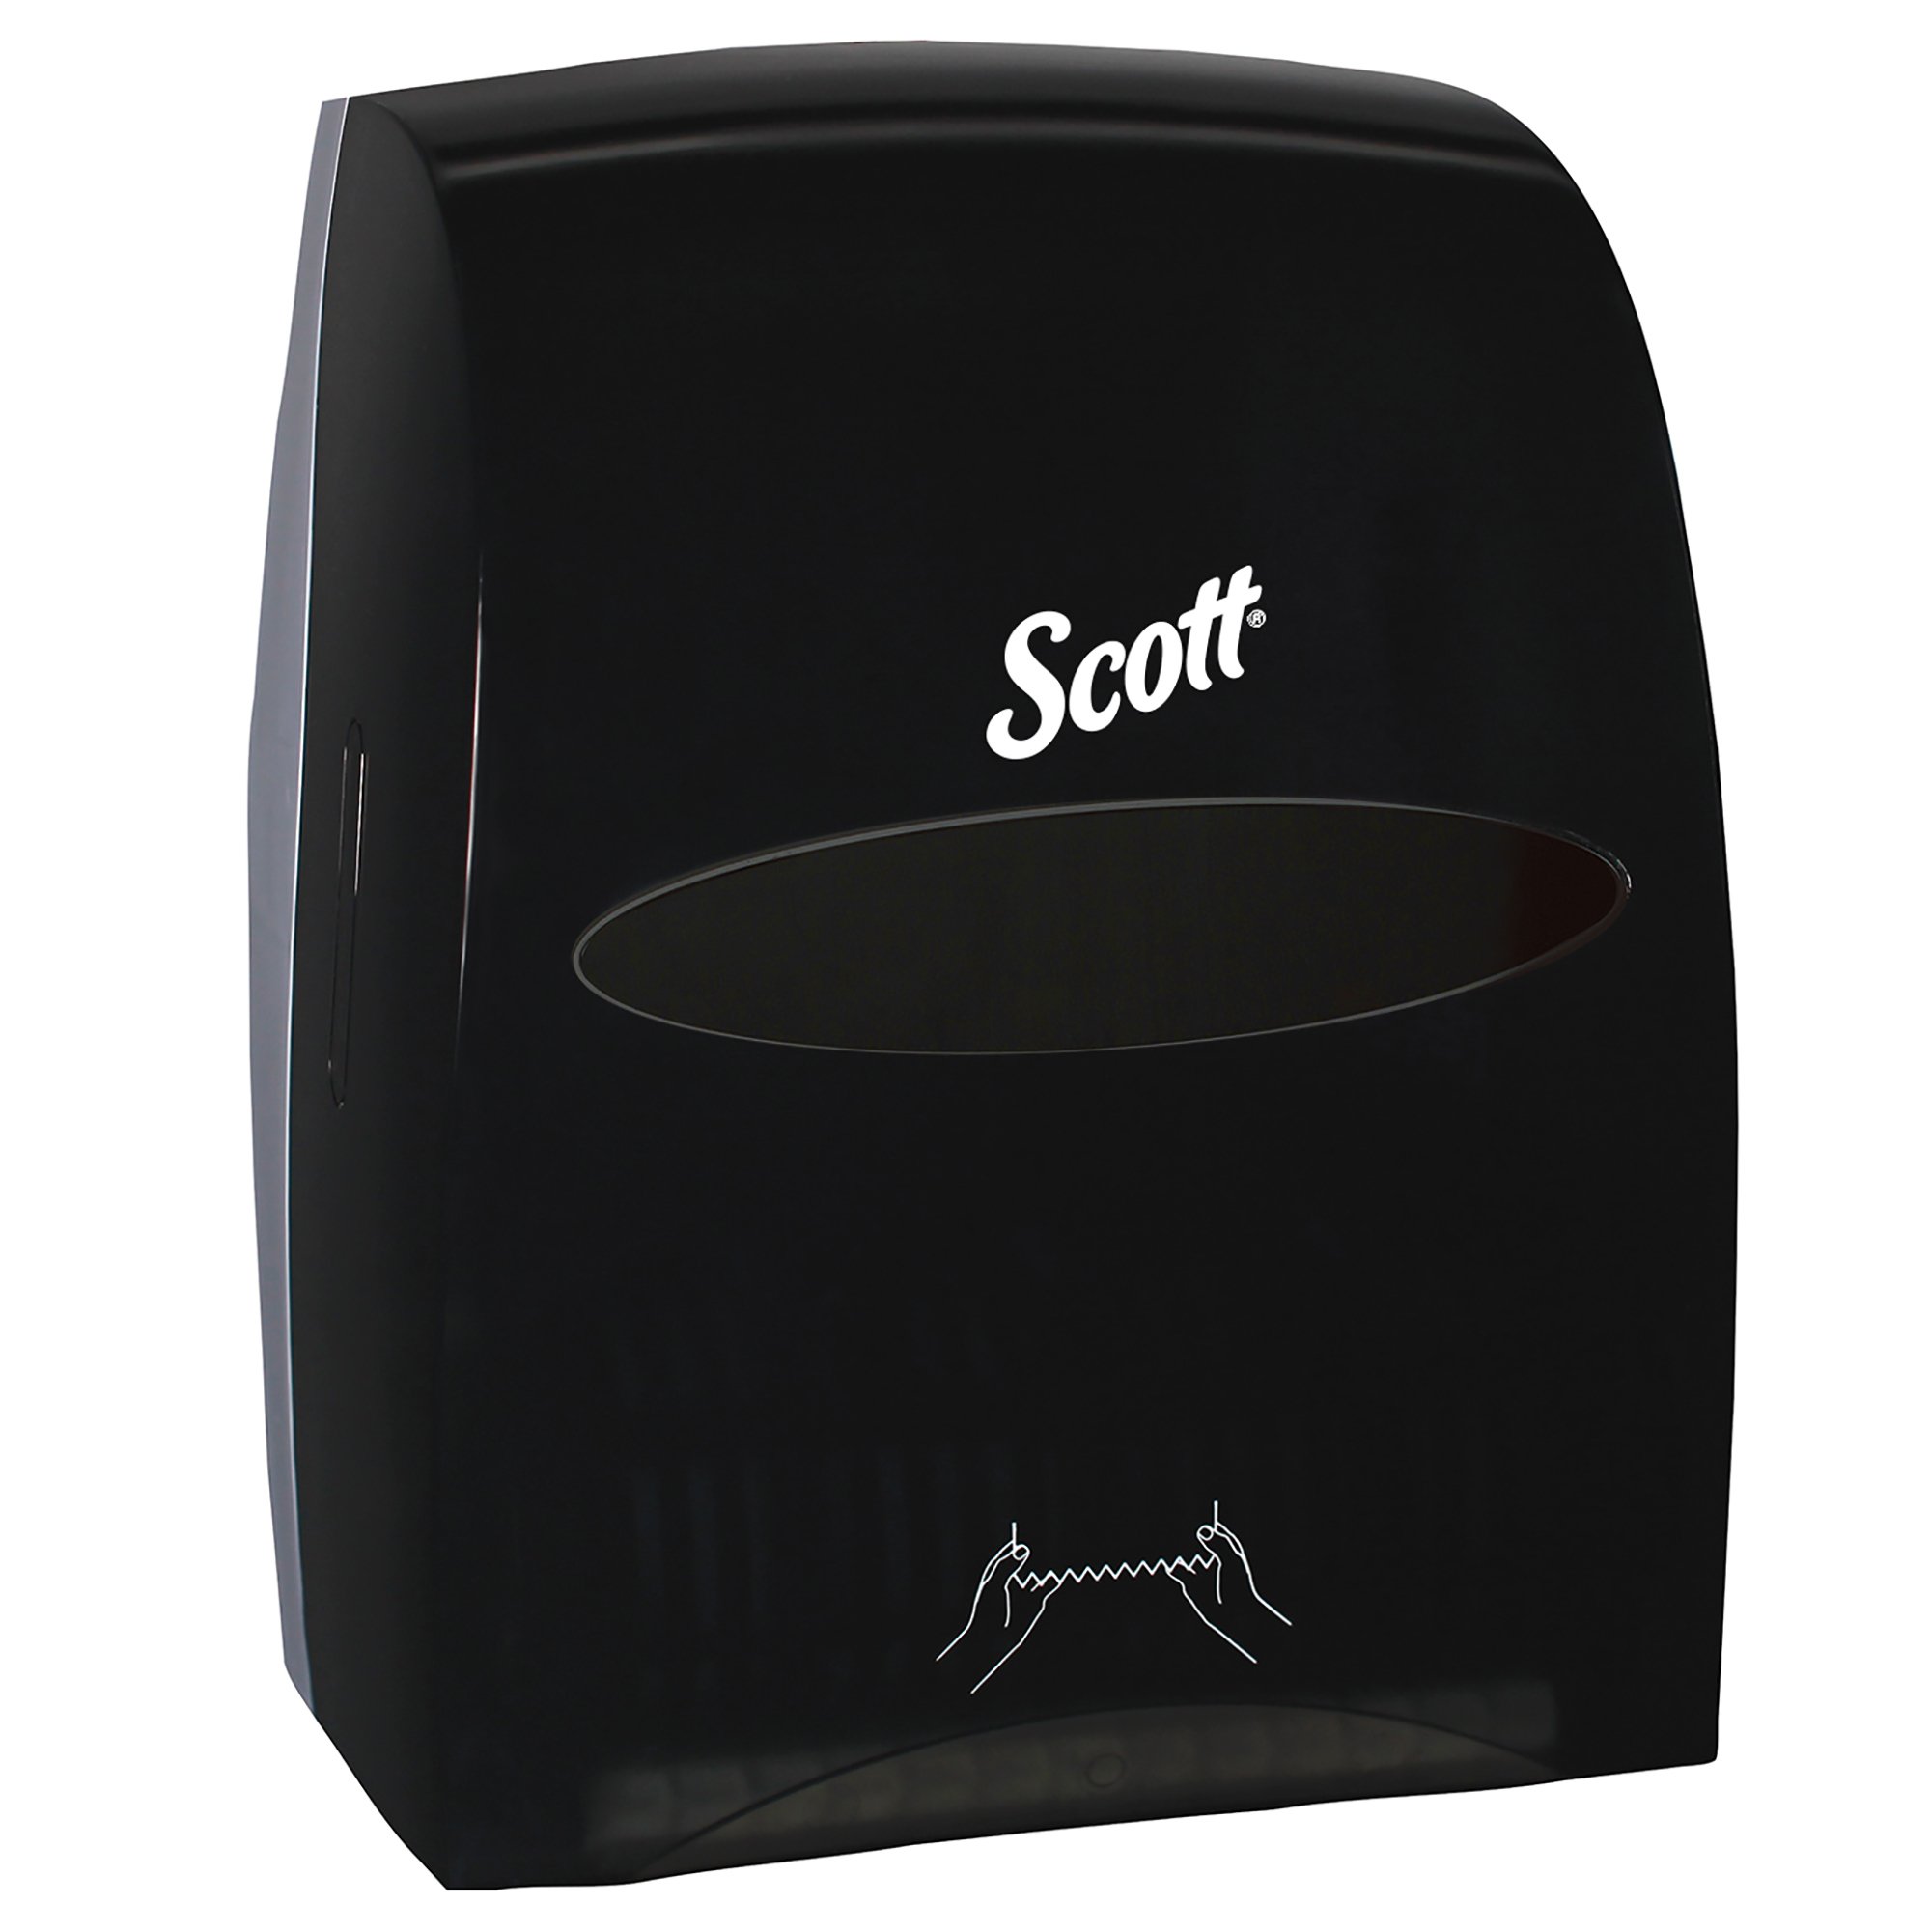 Scott® Essential  Hard Roll Towel Dispenser - Black, Manual, 12.63 x 16.13 x 10.2